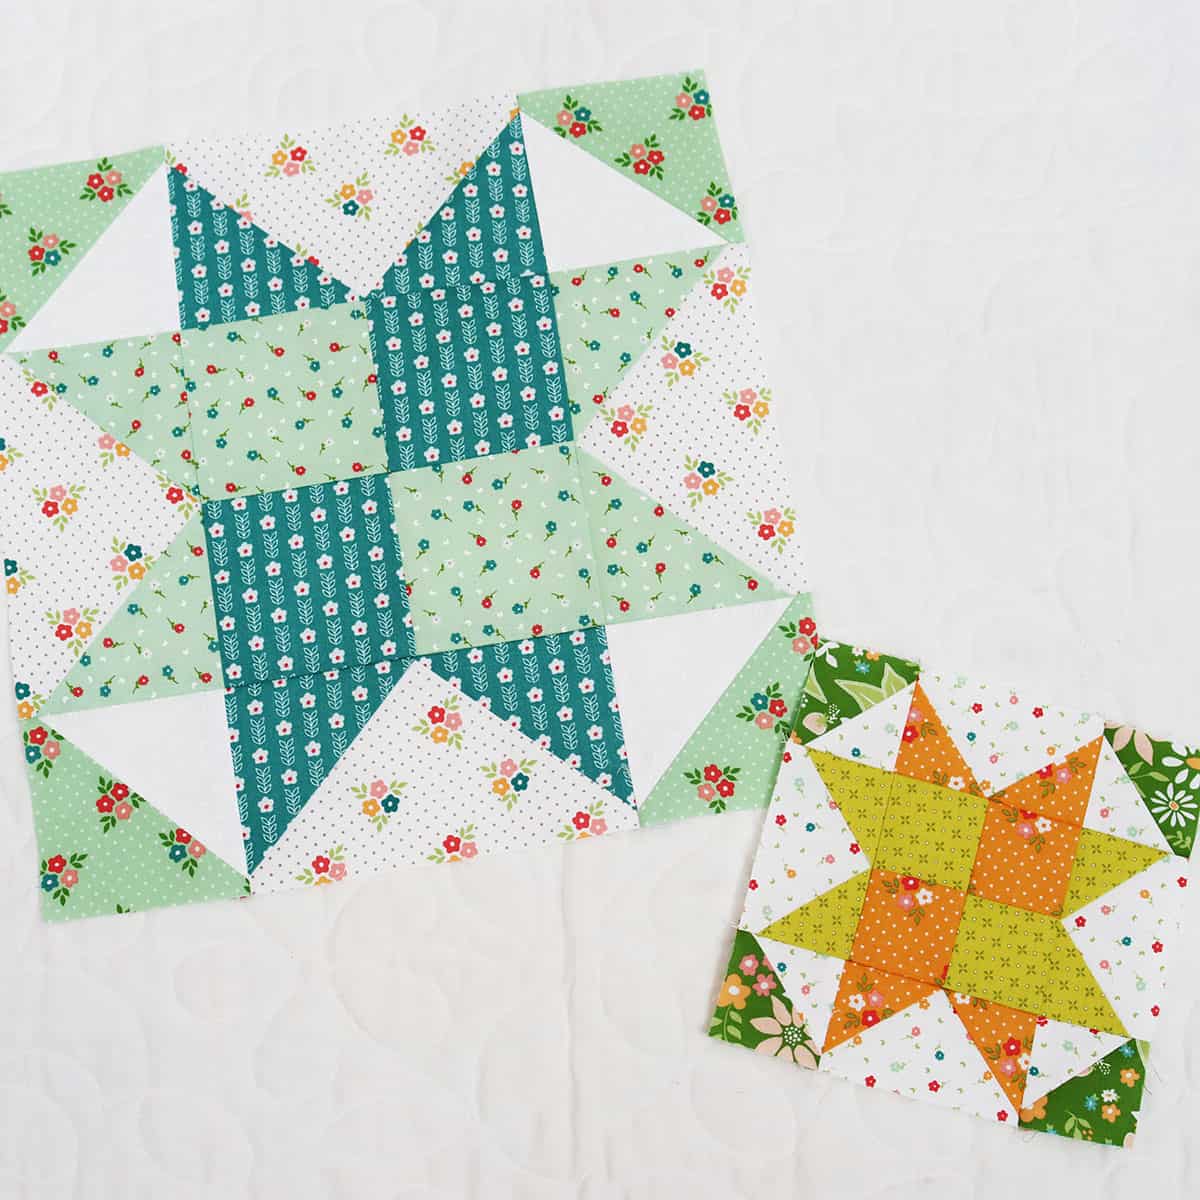 Woven star blocks in Strawberry Lemonade fabrics by Sherri & Chelsi for Moda